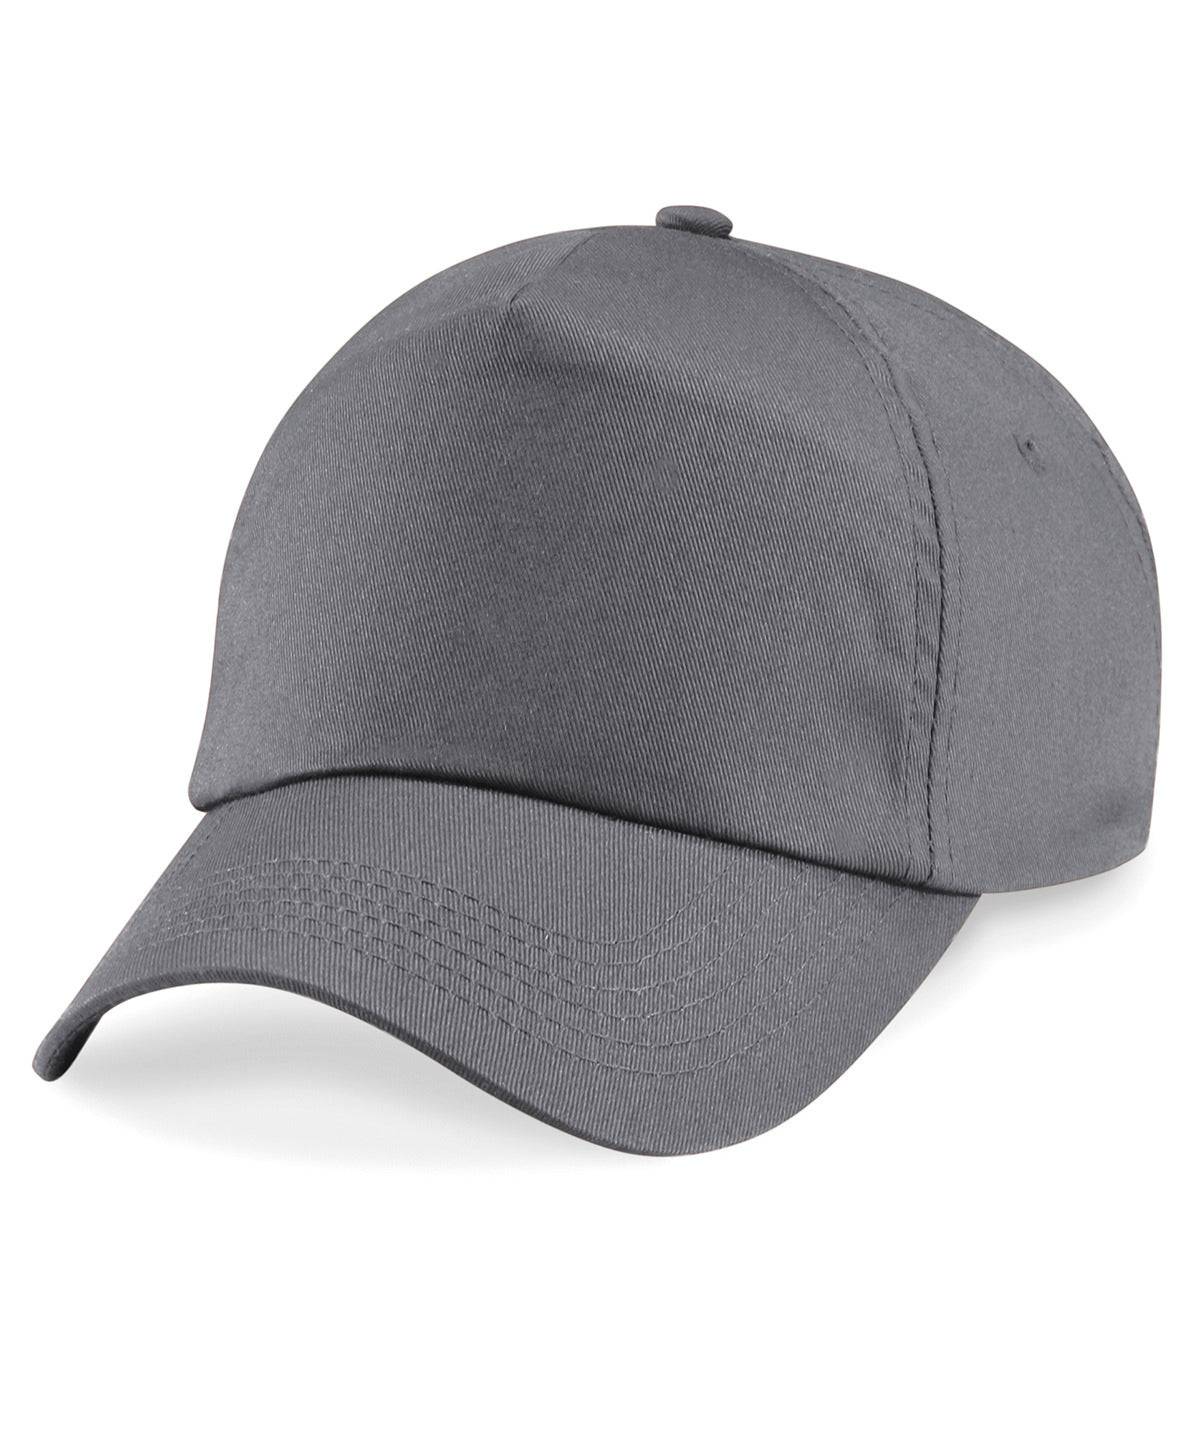 Graphite Grey - Original 5-panel cap